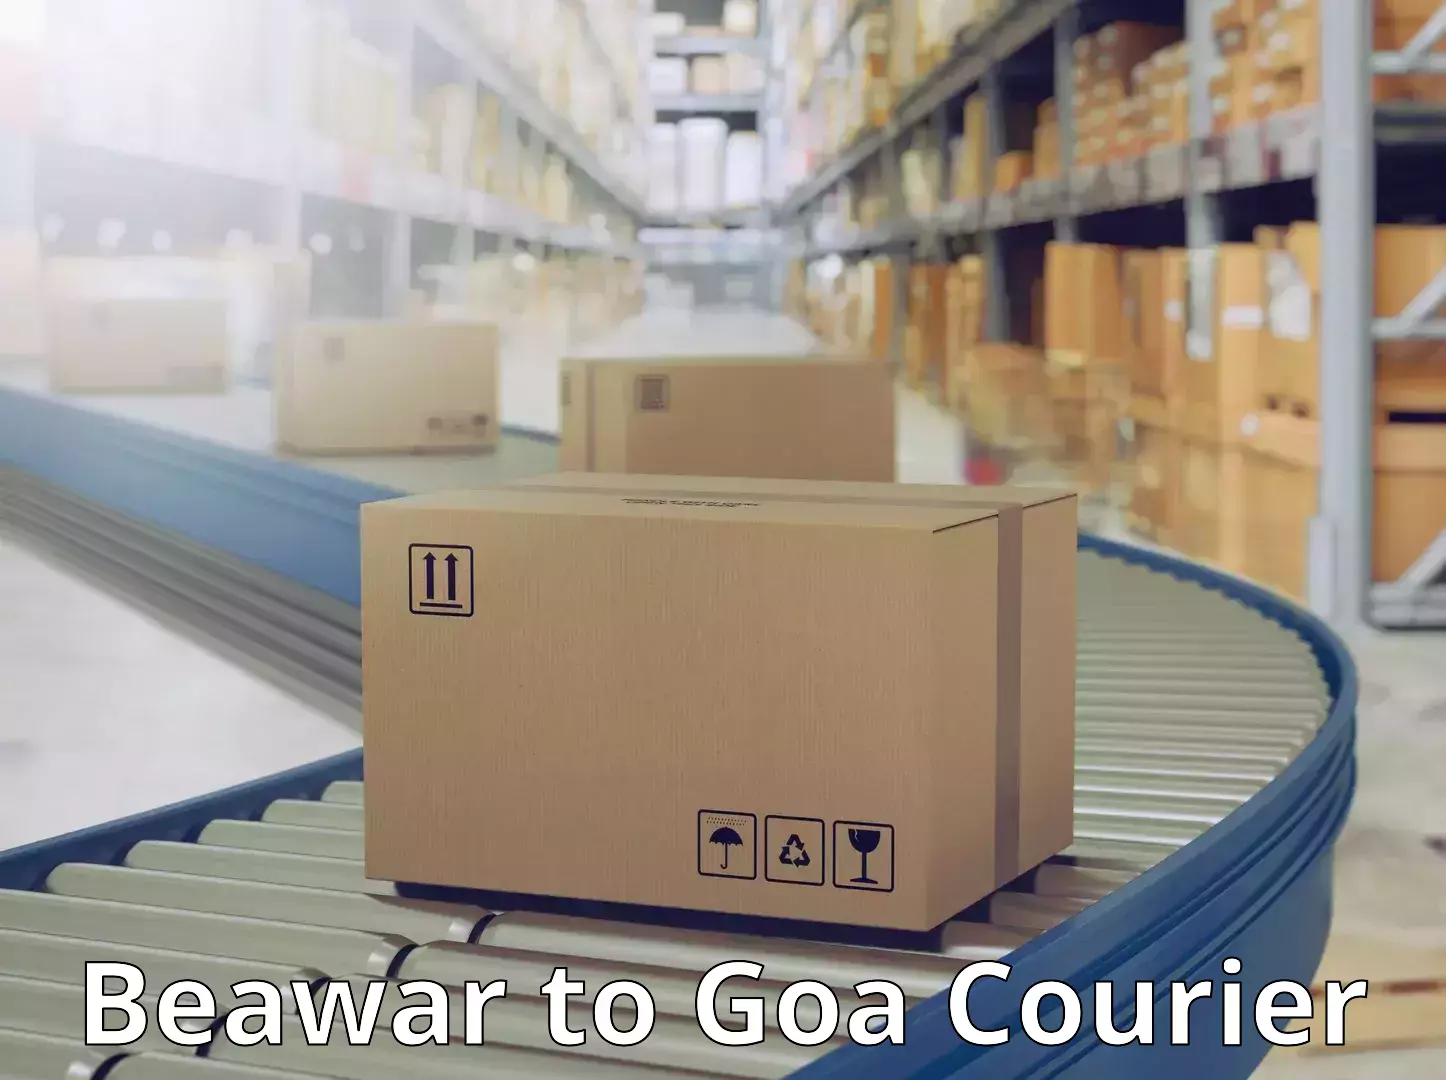 Cargo courier service Beawar to Goa